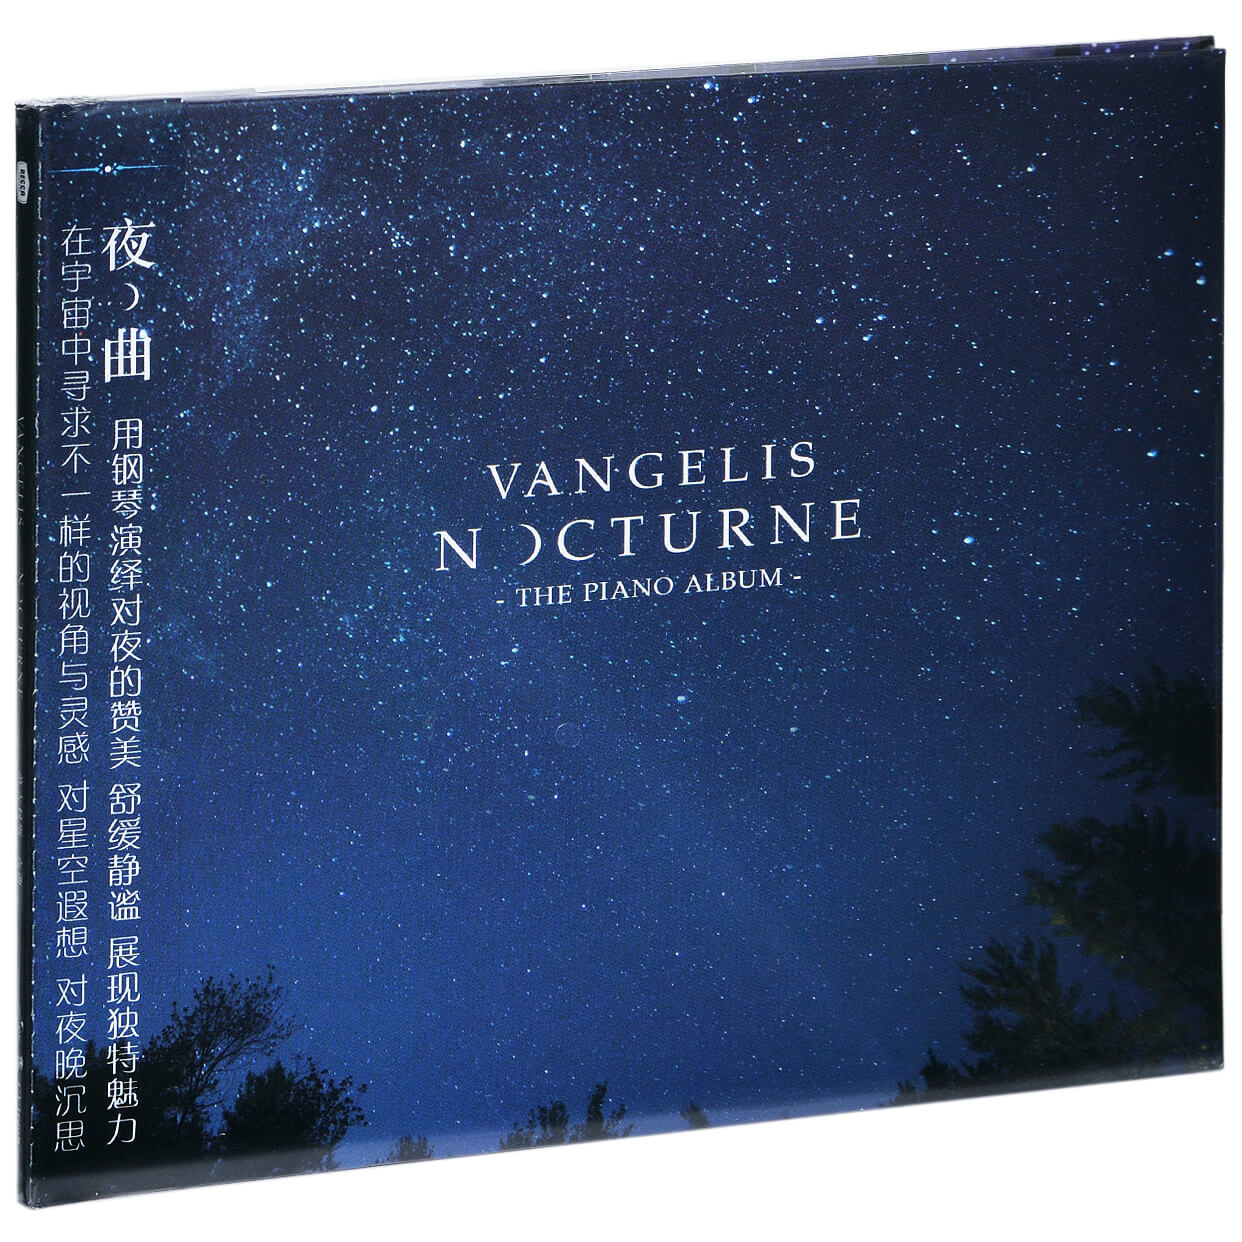 星外星范吉利斯vangelis夜曲nocturne专辑cd古典